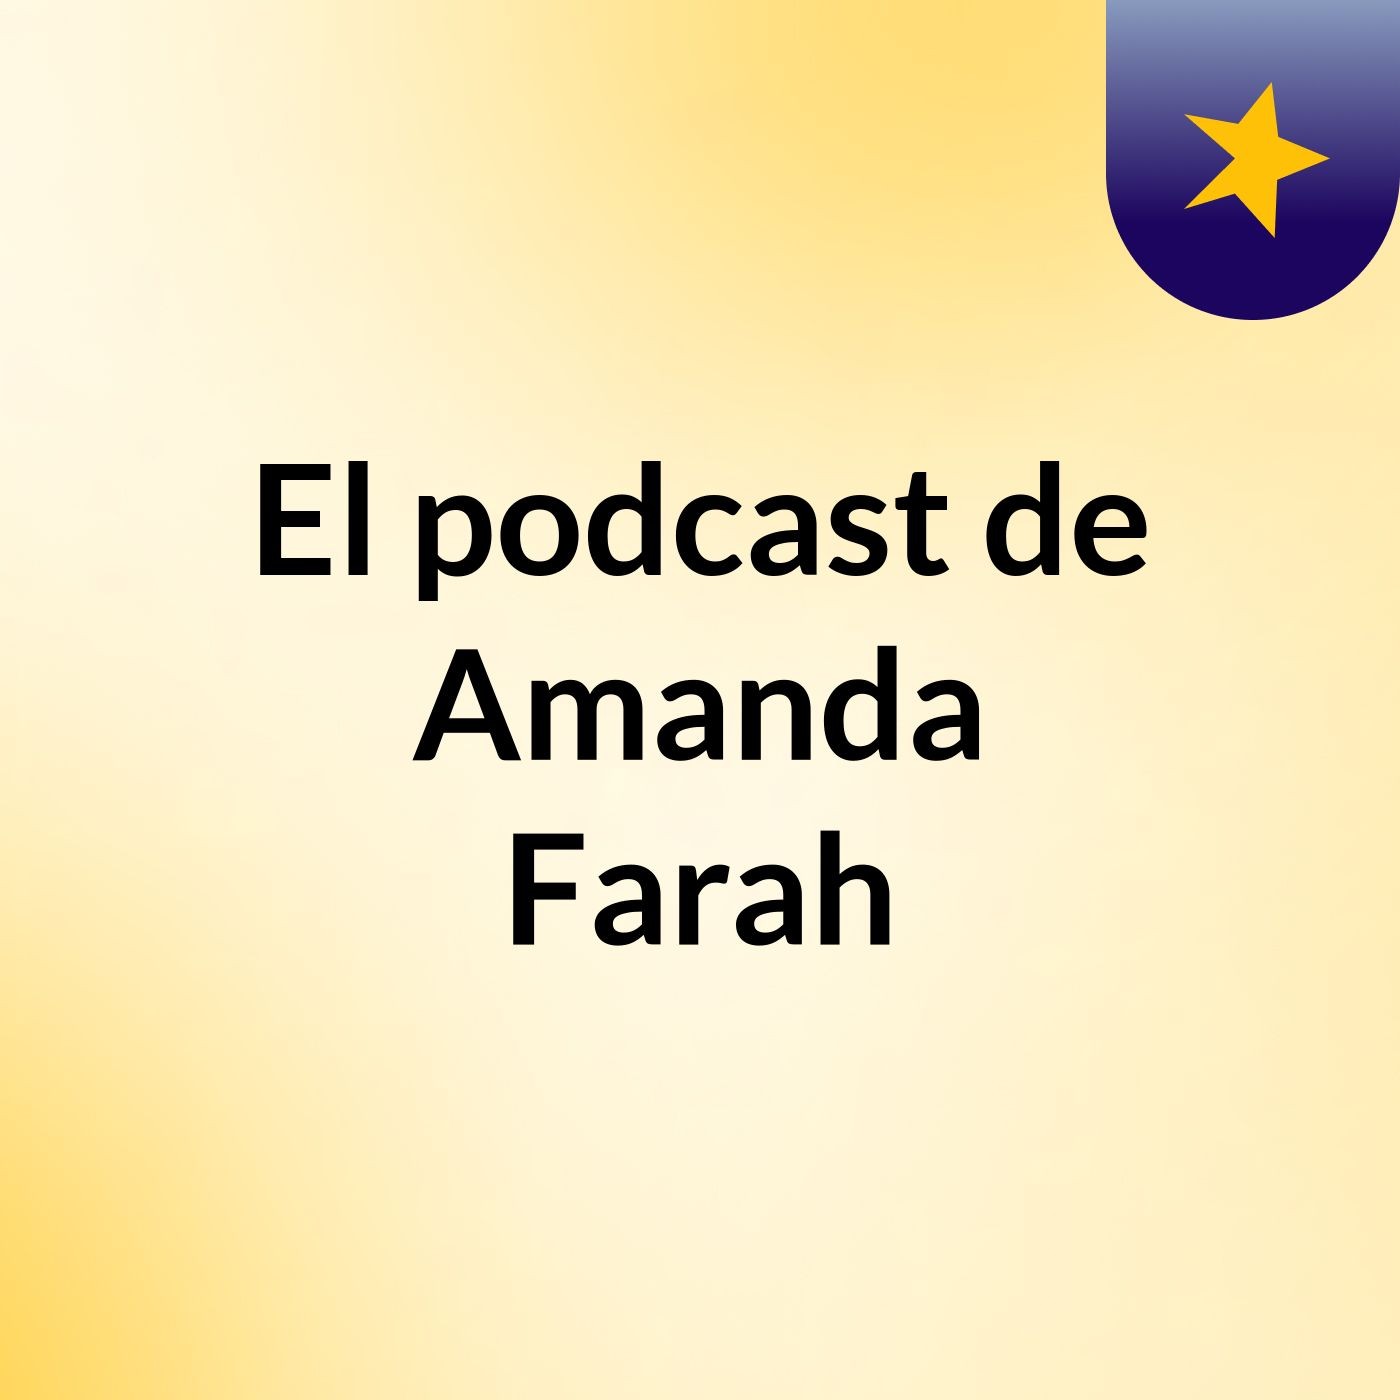 El podcast de Amanda Farah